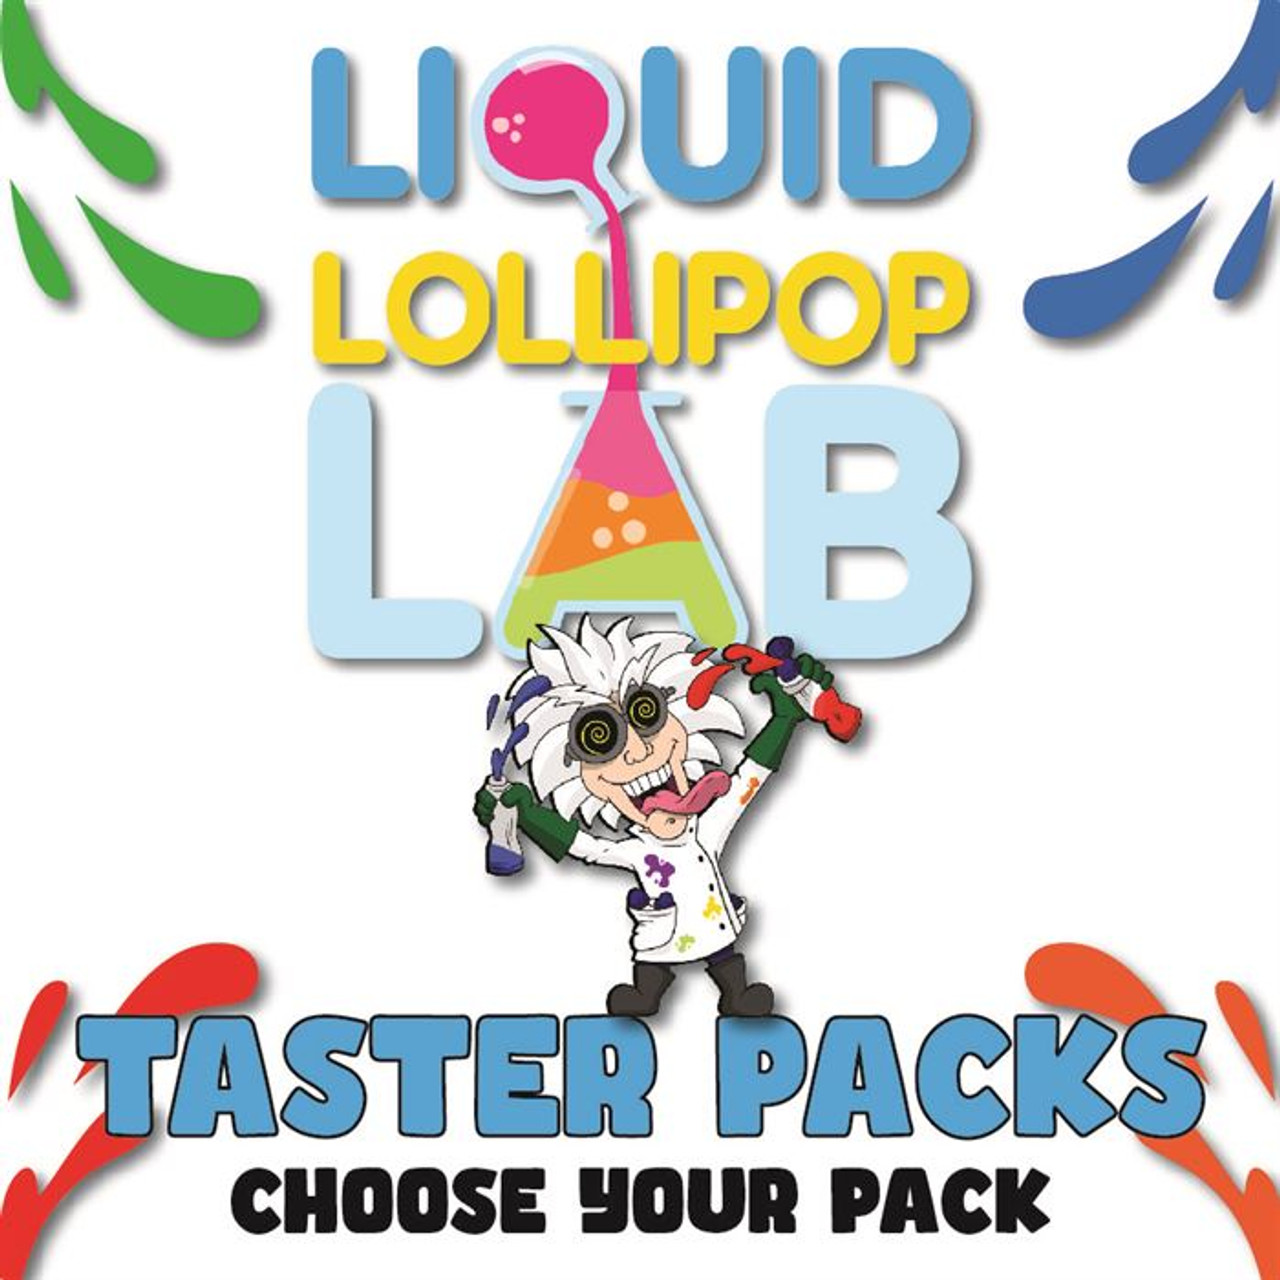 Lollipop Lab